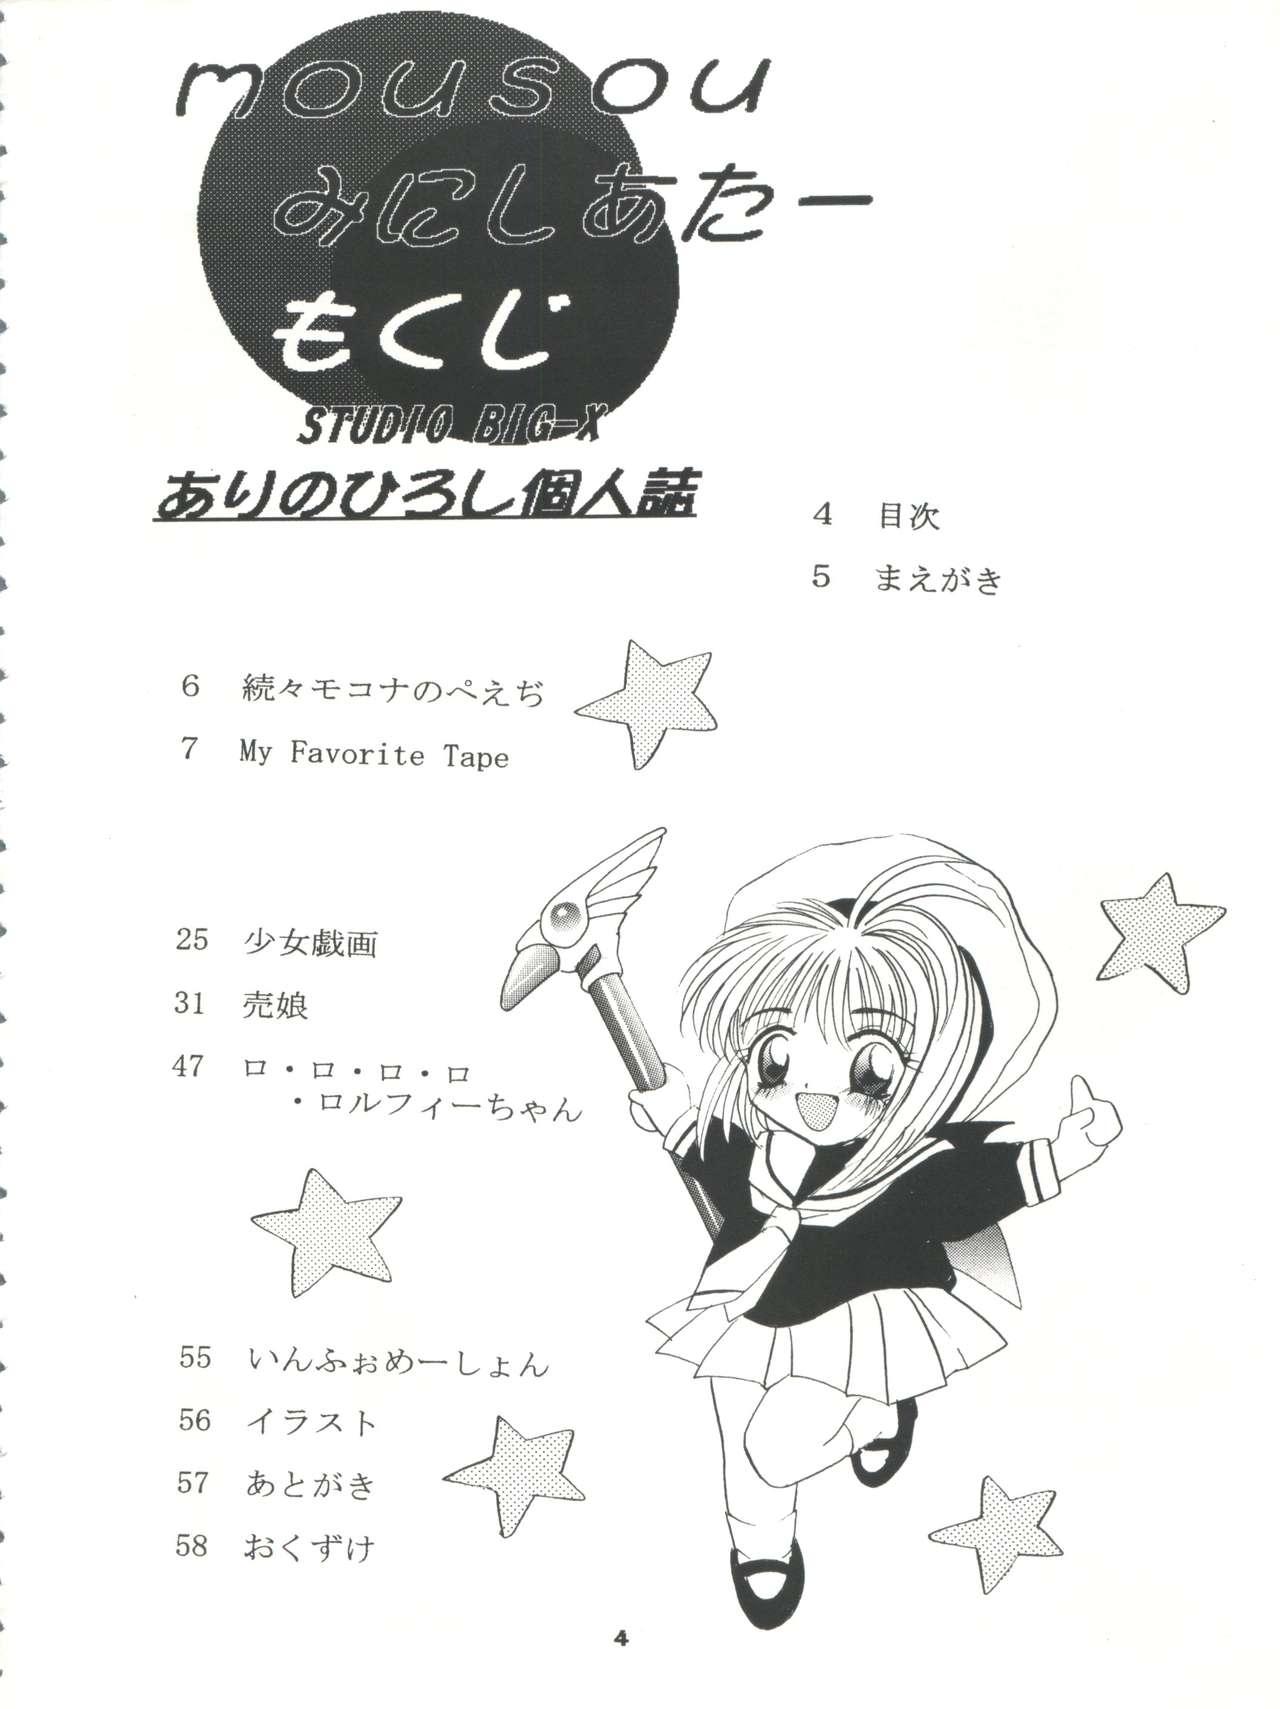 Mofos Mousou Mini Theater - Cardcaptor sakura Sakura taisen Sex Toy - Page 4